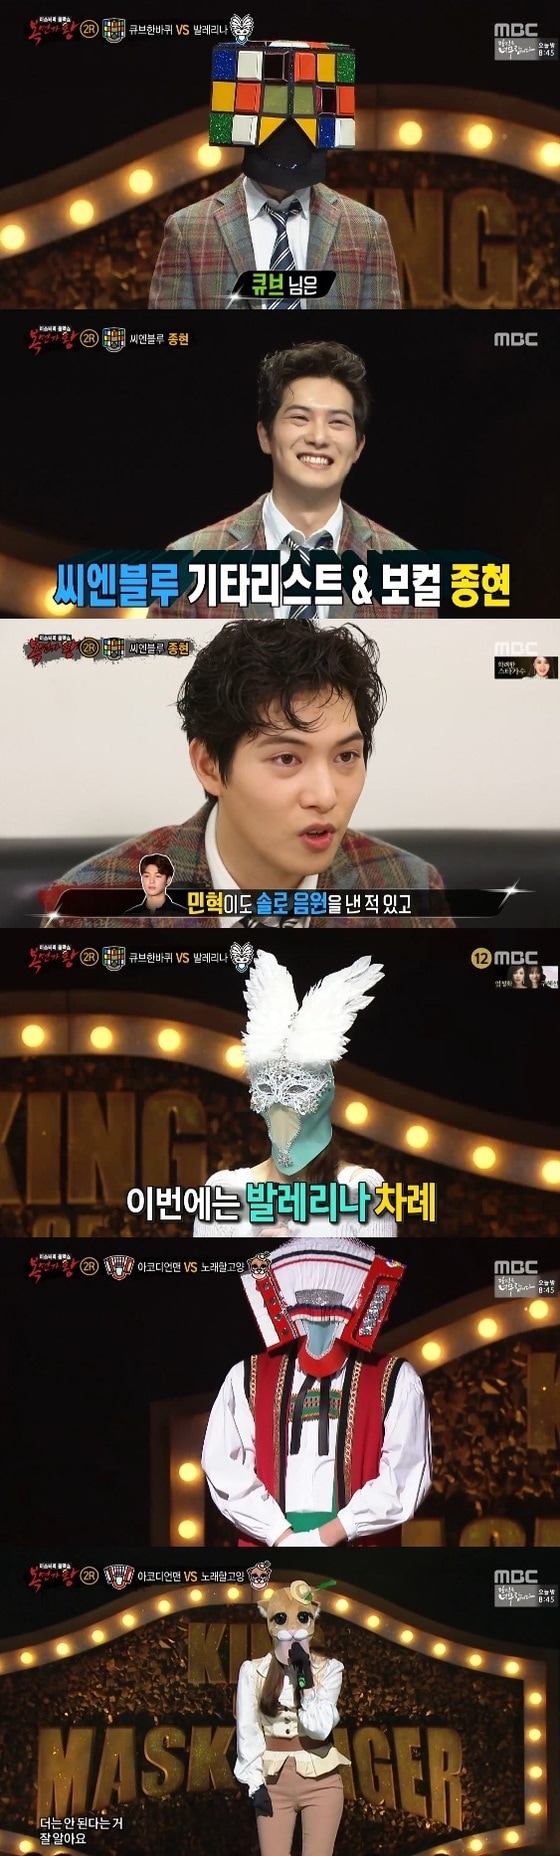 '복면가왕'이 이번주 180분간 방송된다. © News1star / MBC '복면가왕' 캡처